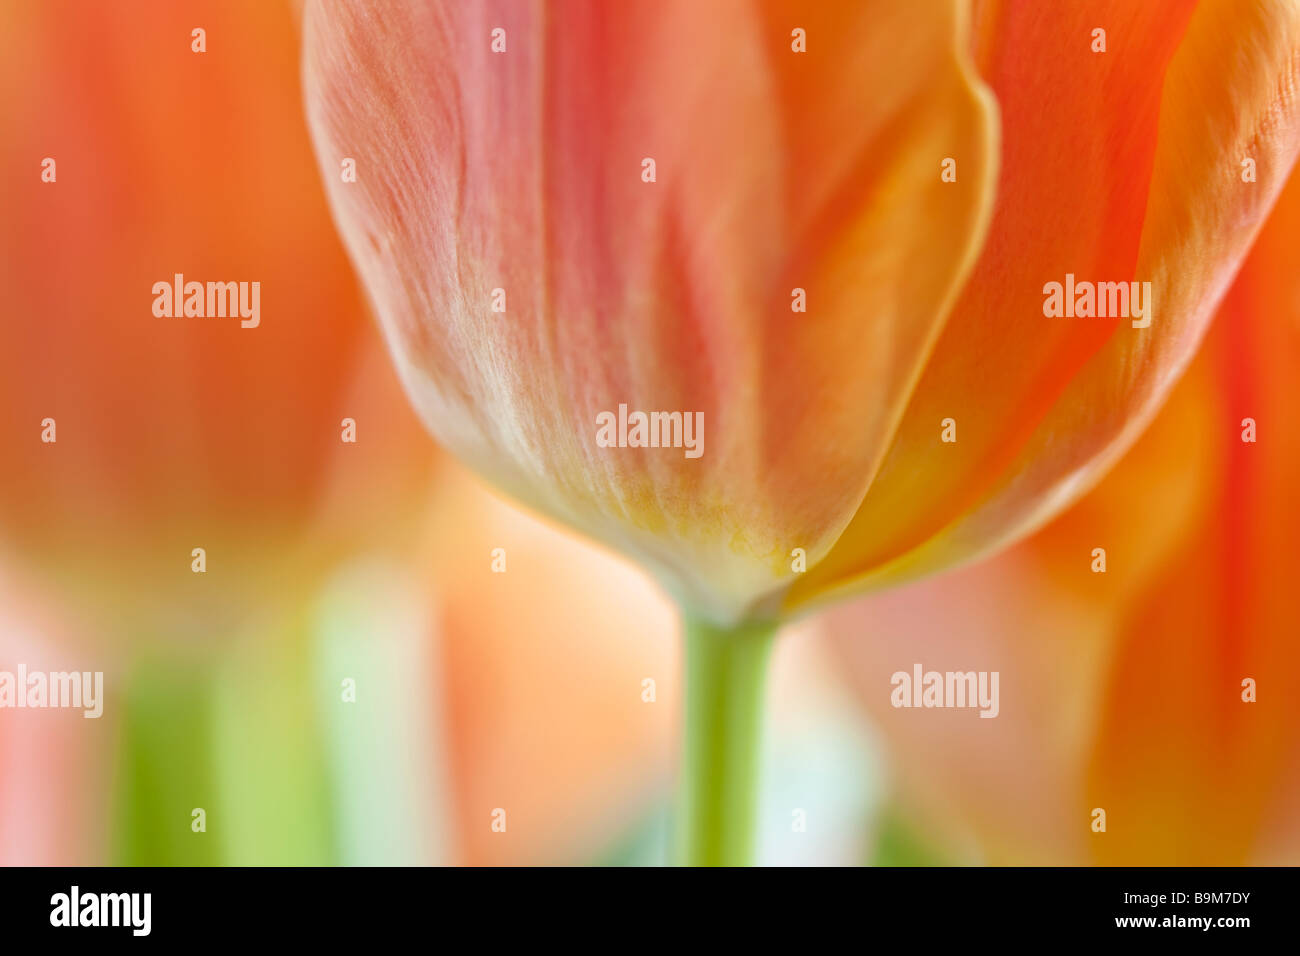 Arancio e giallo tulip close-up contro uno sfondo bianco Foto Stock